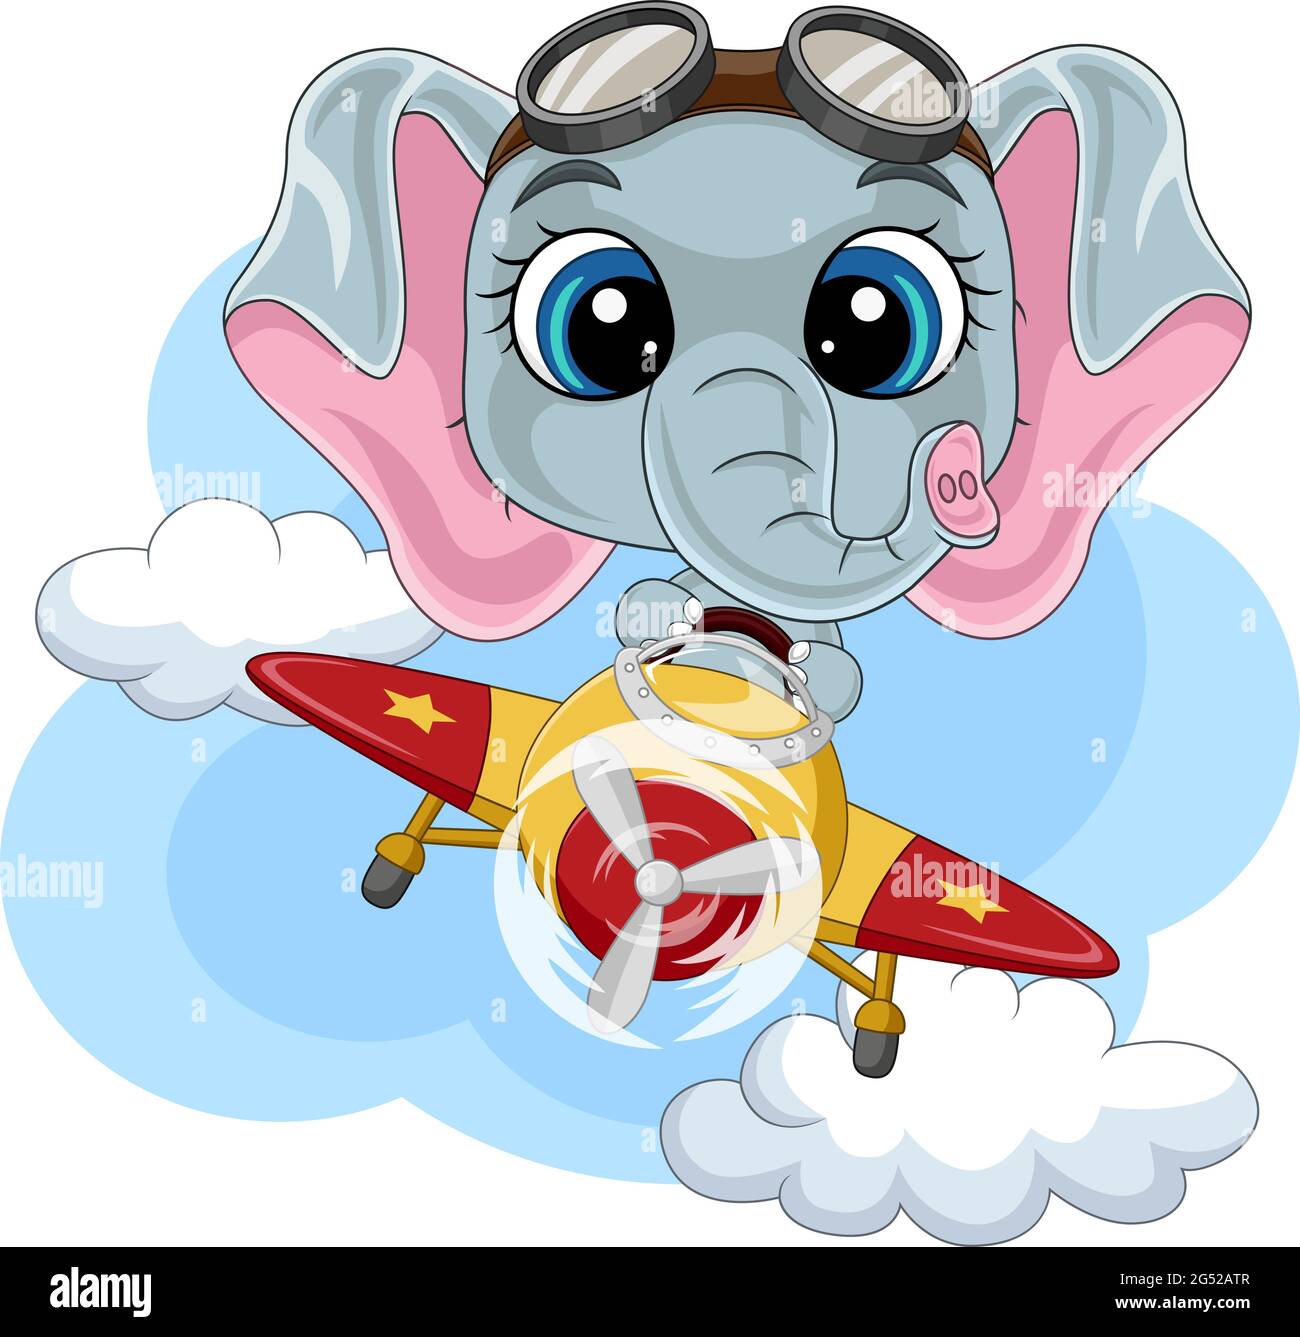 Dessin animé bébé éléphant opérant un avion Illustration de Vecteur